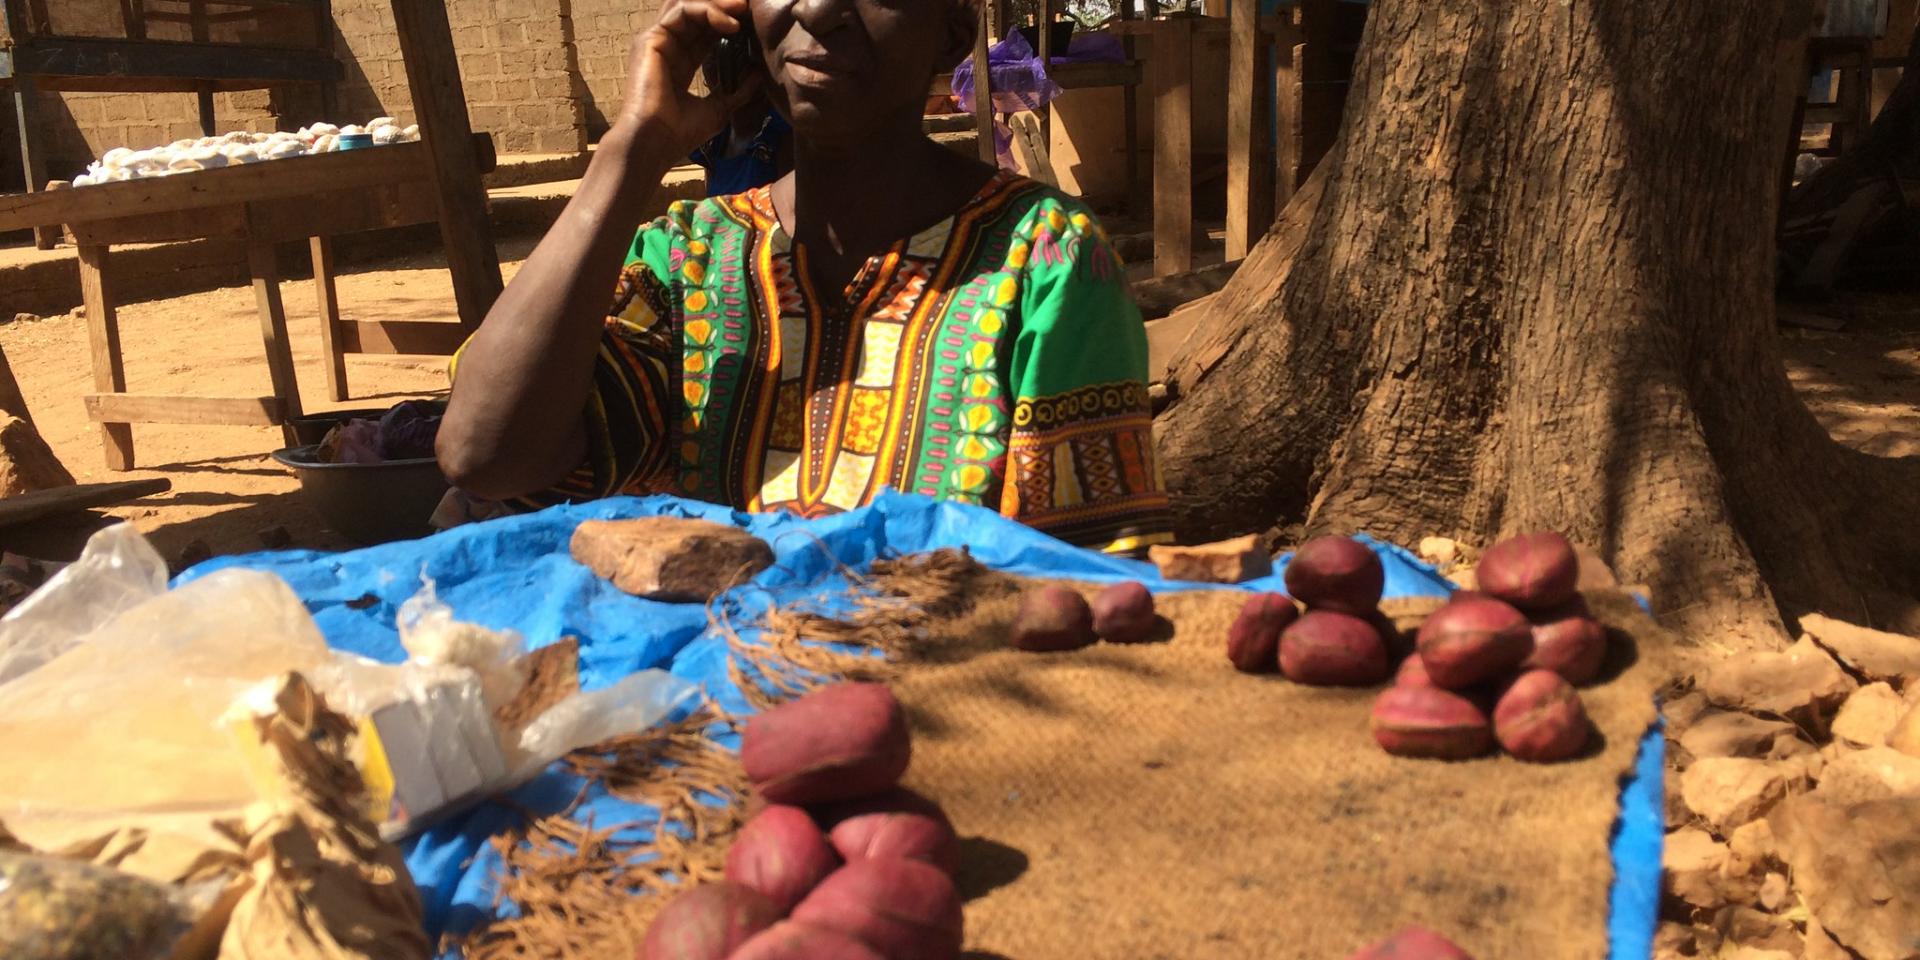 Farmer in Ghana on phone